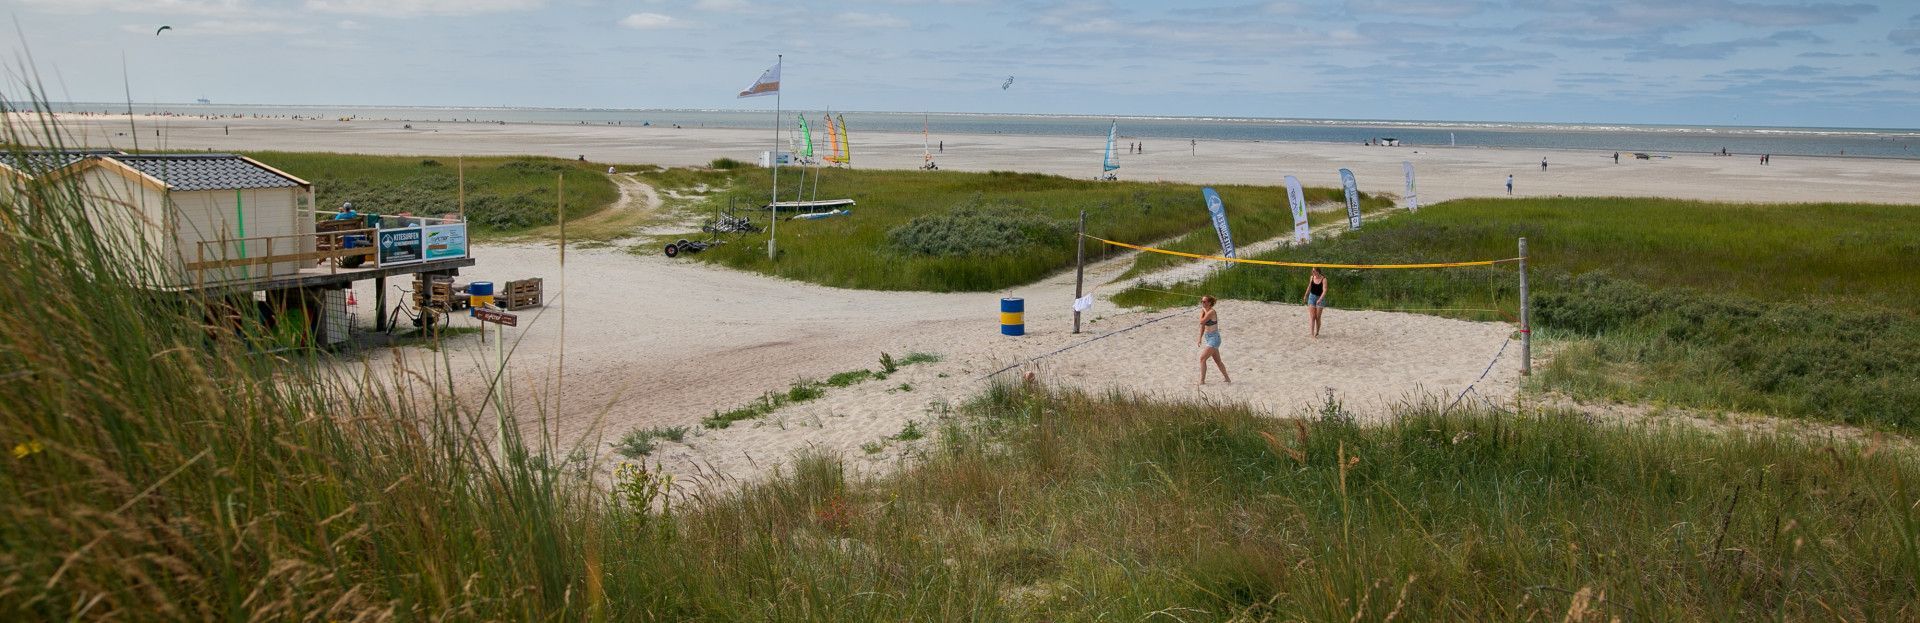 Reactief buitensport, strandzeilen op het strand van Schiermonnikoog